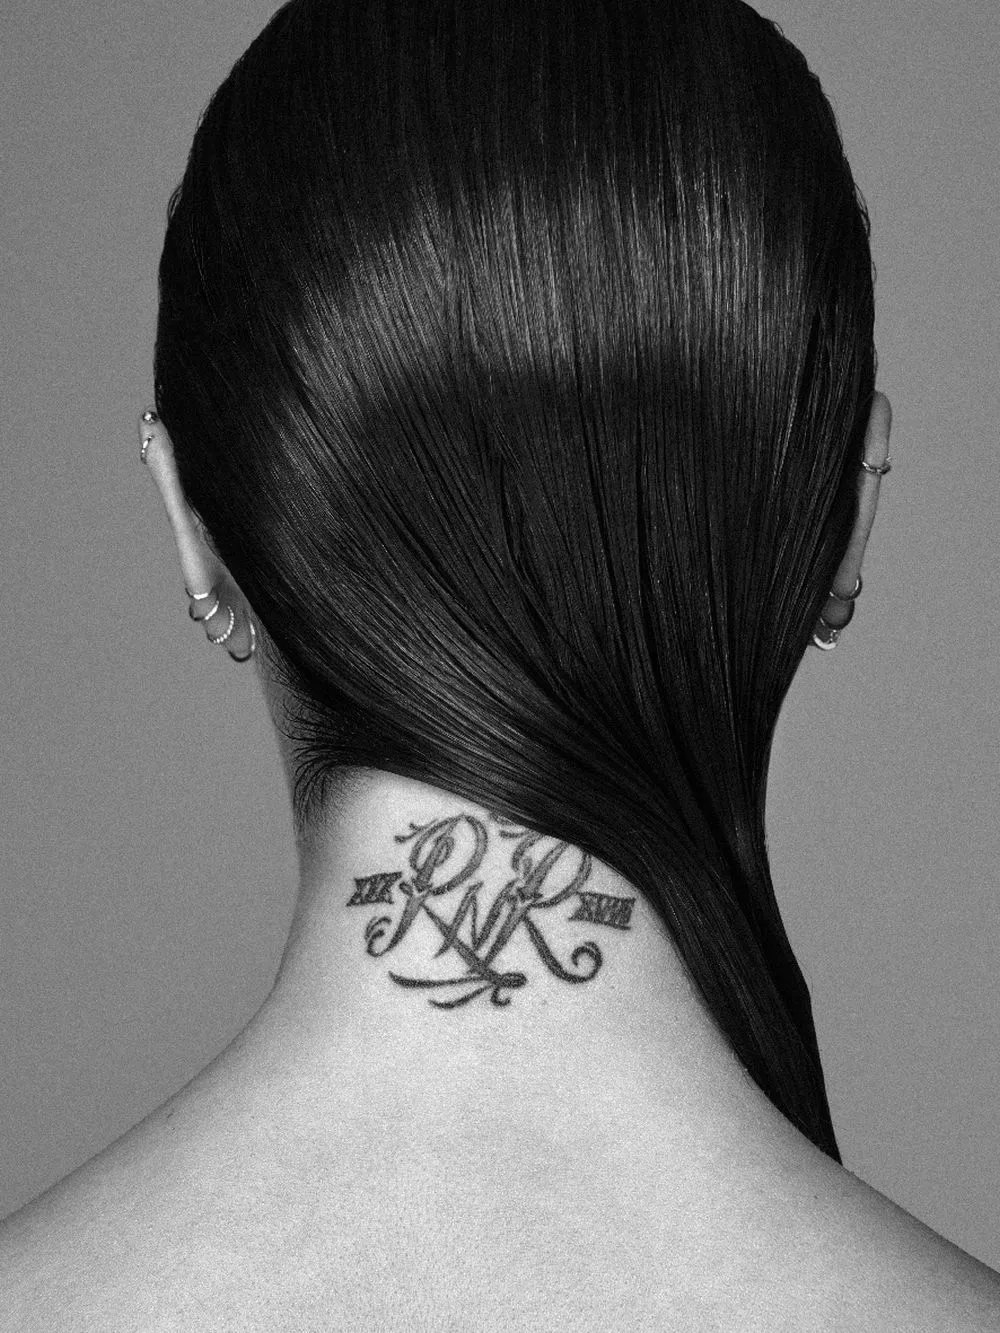 Descubrimos los 5 tatuajes que lleva Pilar Rubio en su cuerpo | Telva.com